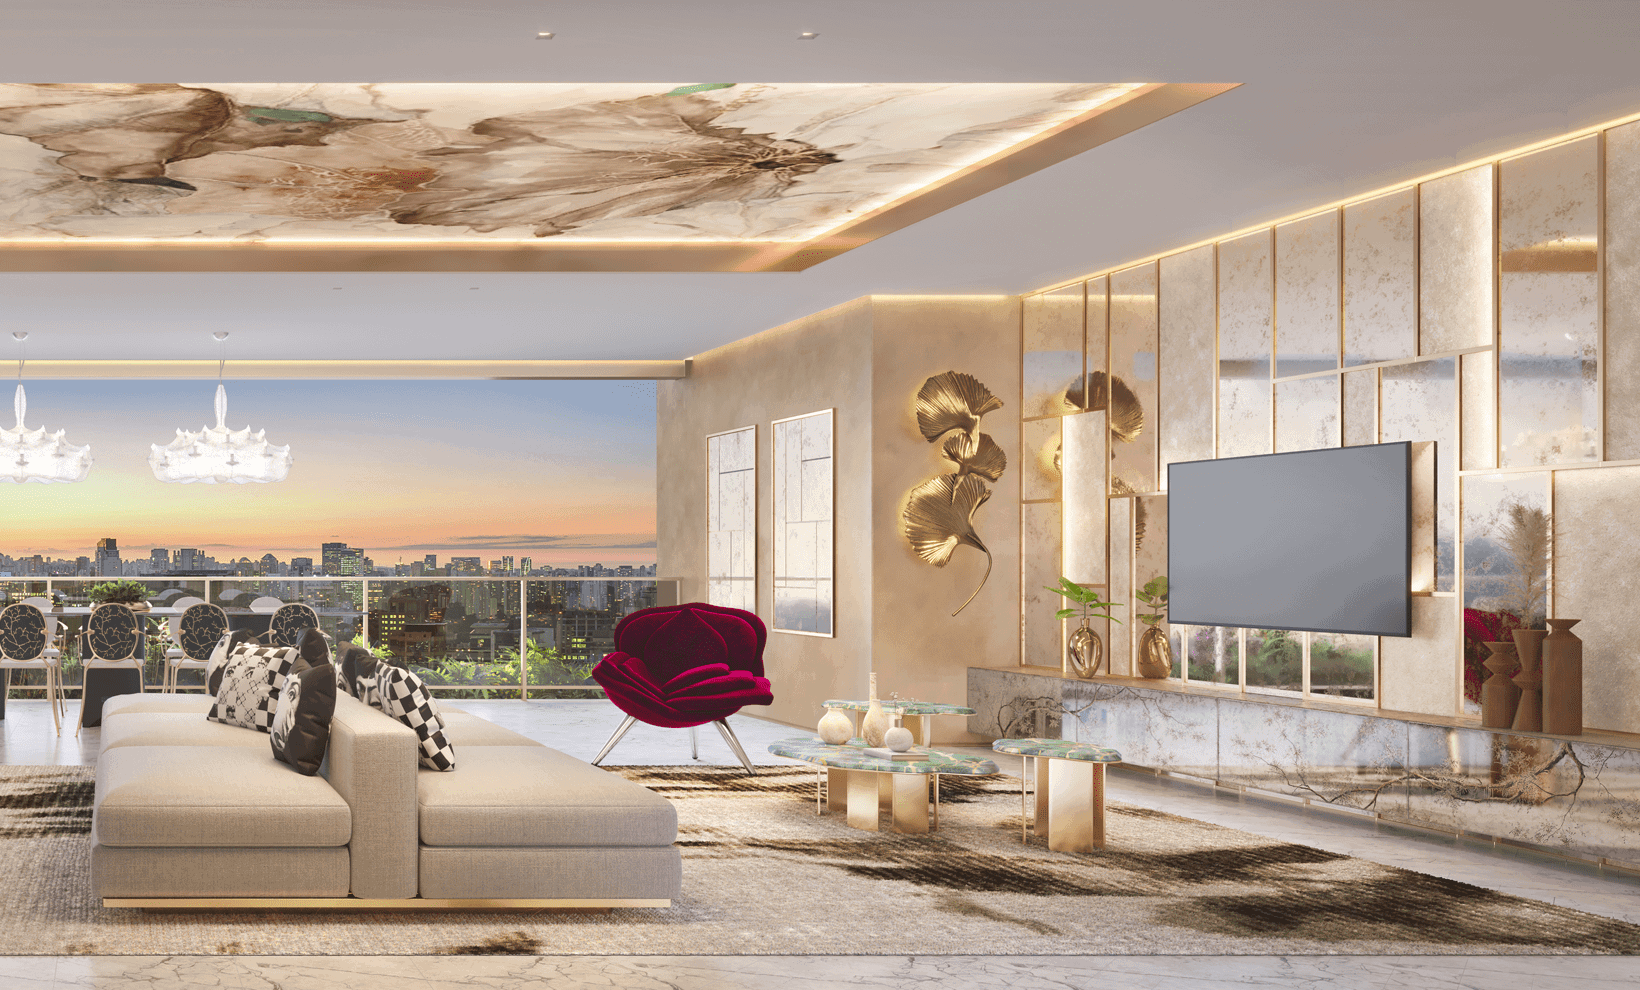 Sala luxuosa do empreendimento Casa Eden By Yoo East com vista panorâmica da cidade ao pôr do sol, móveis elegantes e decoração moderna